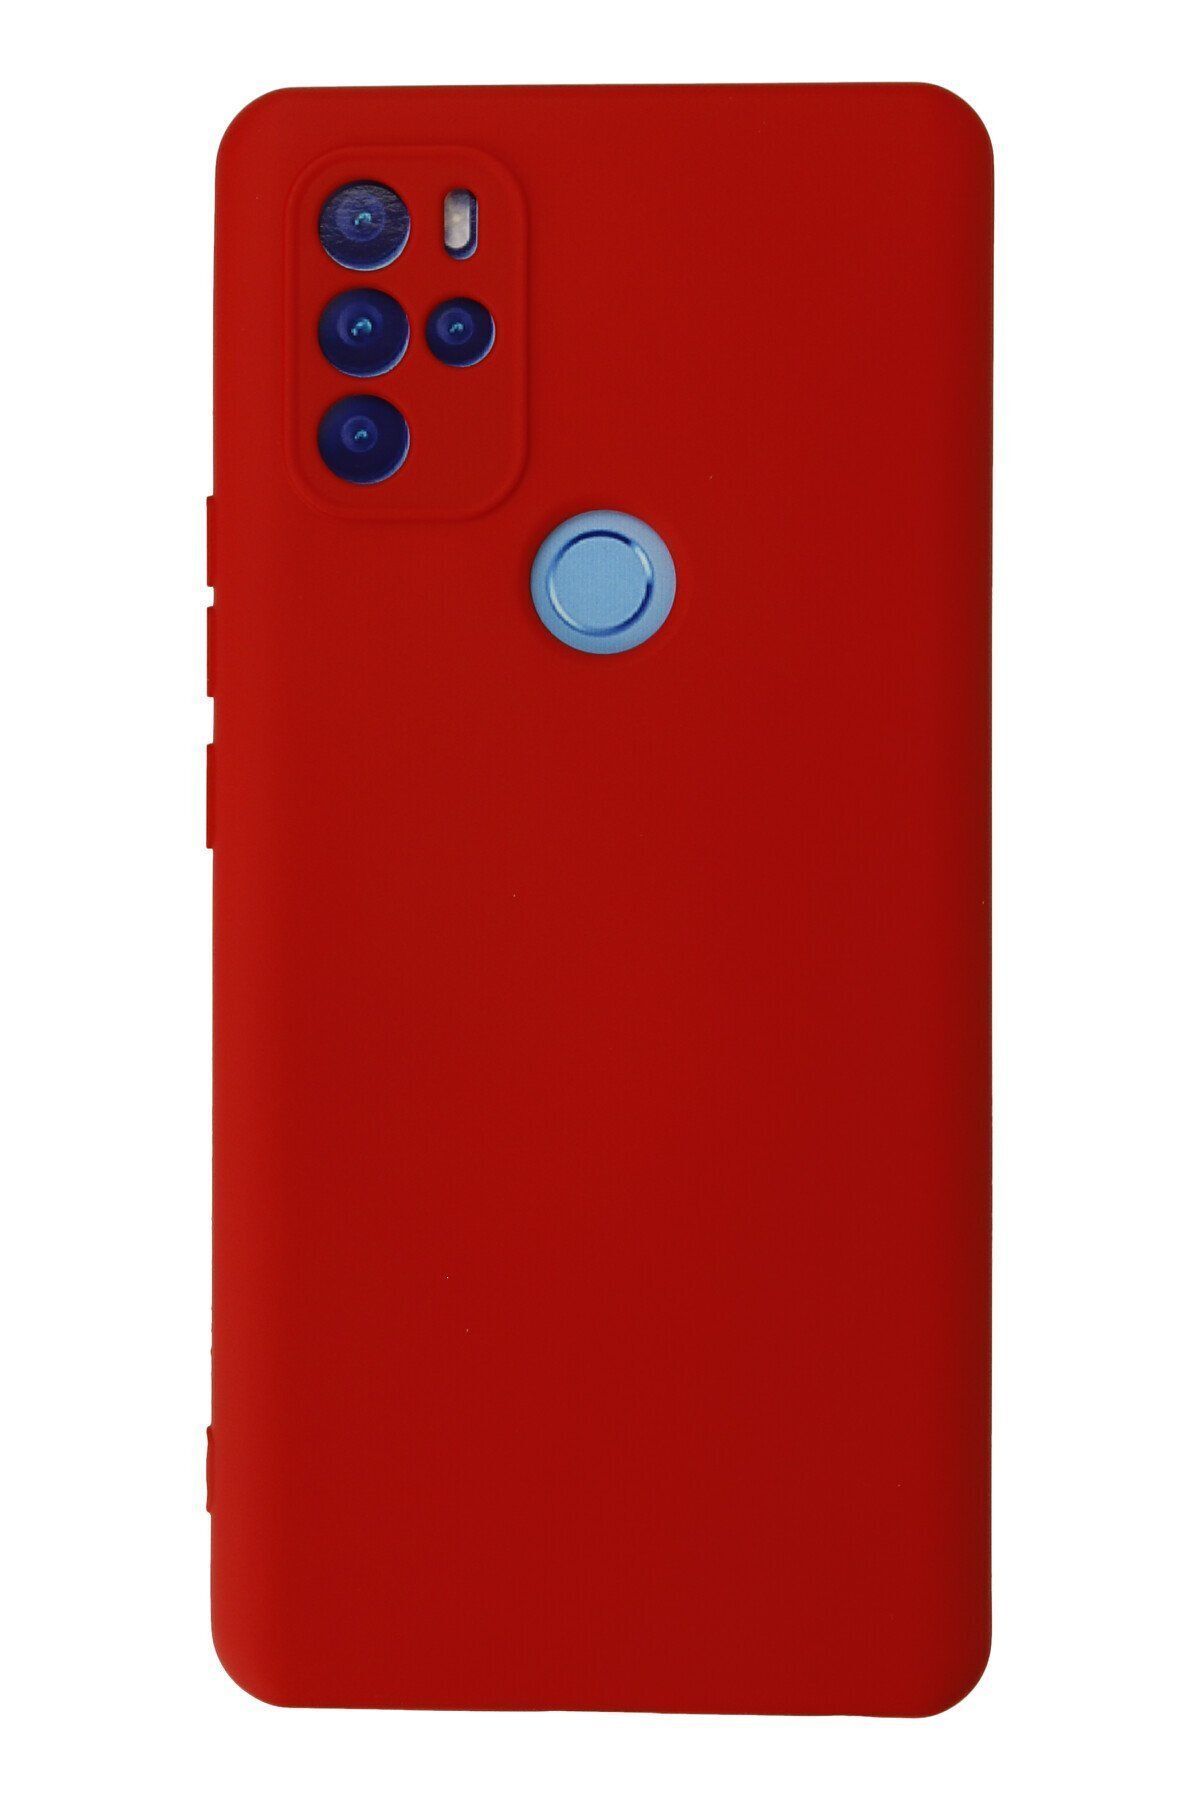 NewFace Omix X500 içi Süet Telefon Kılıfı - Soft Yüzey Kadife Silikon Kapak - Kırmızı